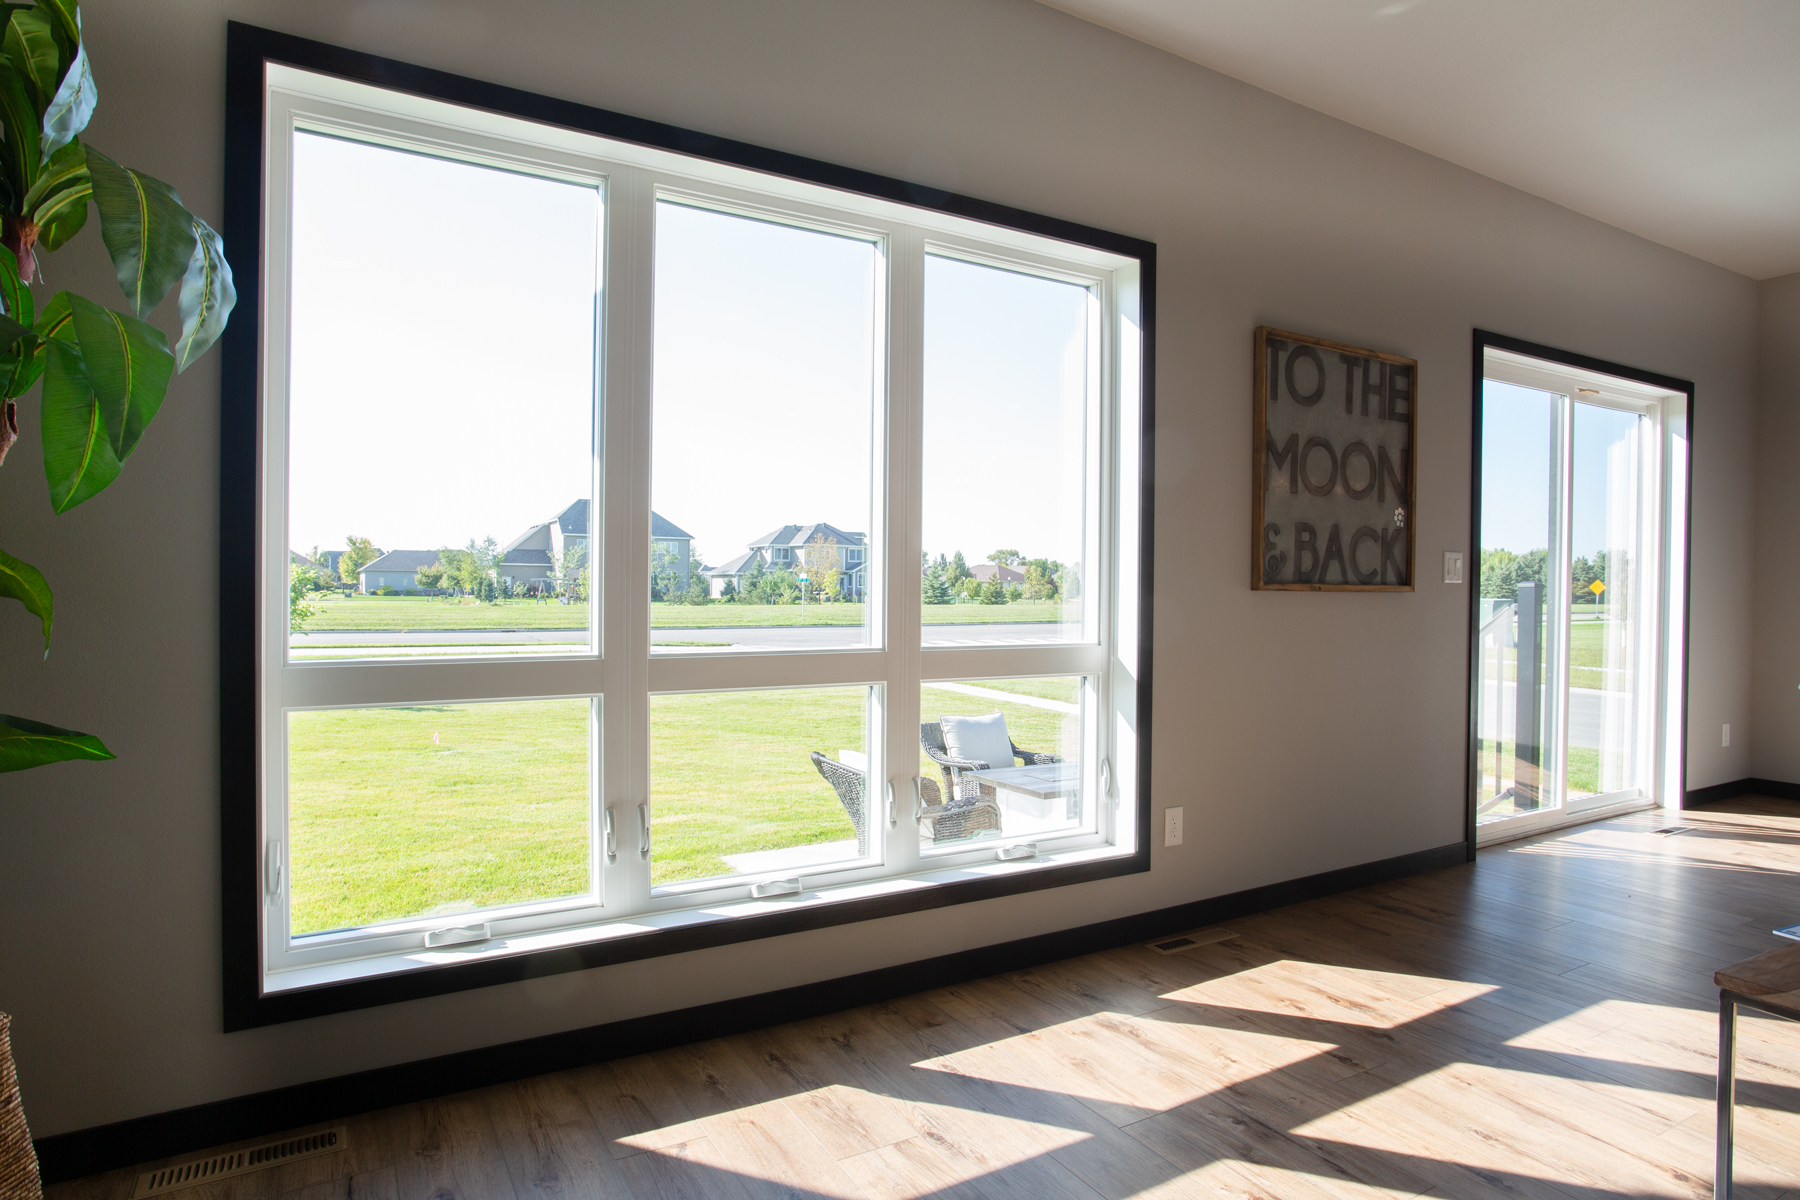 Living room window with sliding glass door in view